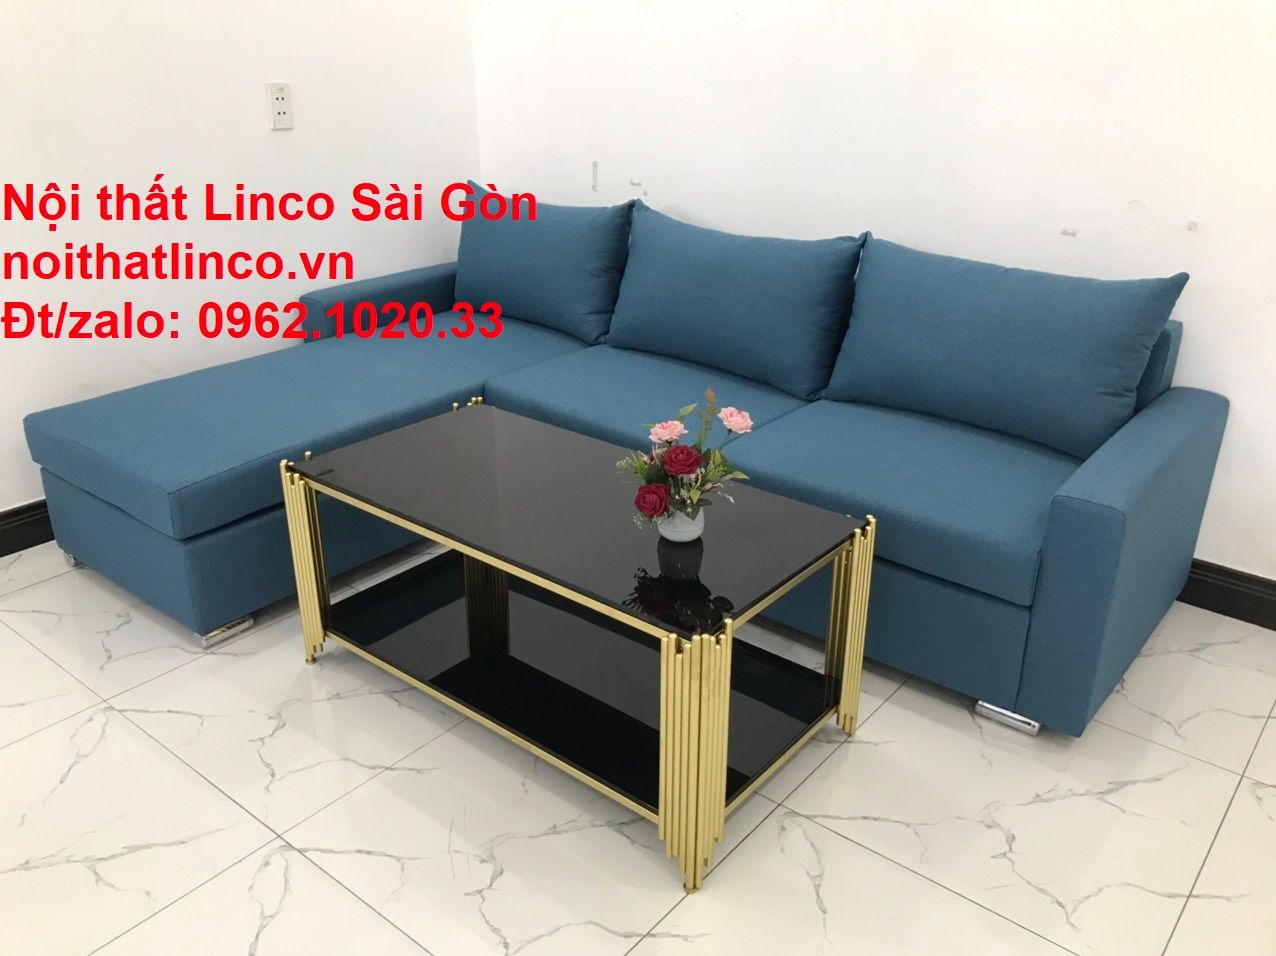  Bộ bàn ghế sofa góc L giá rẻ | Ghế sofa góc xanh dương nước biển đẹp | Nội thất Linco Sài Gòn 